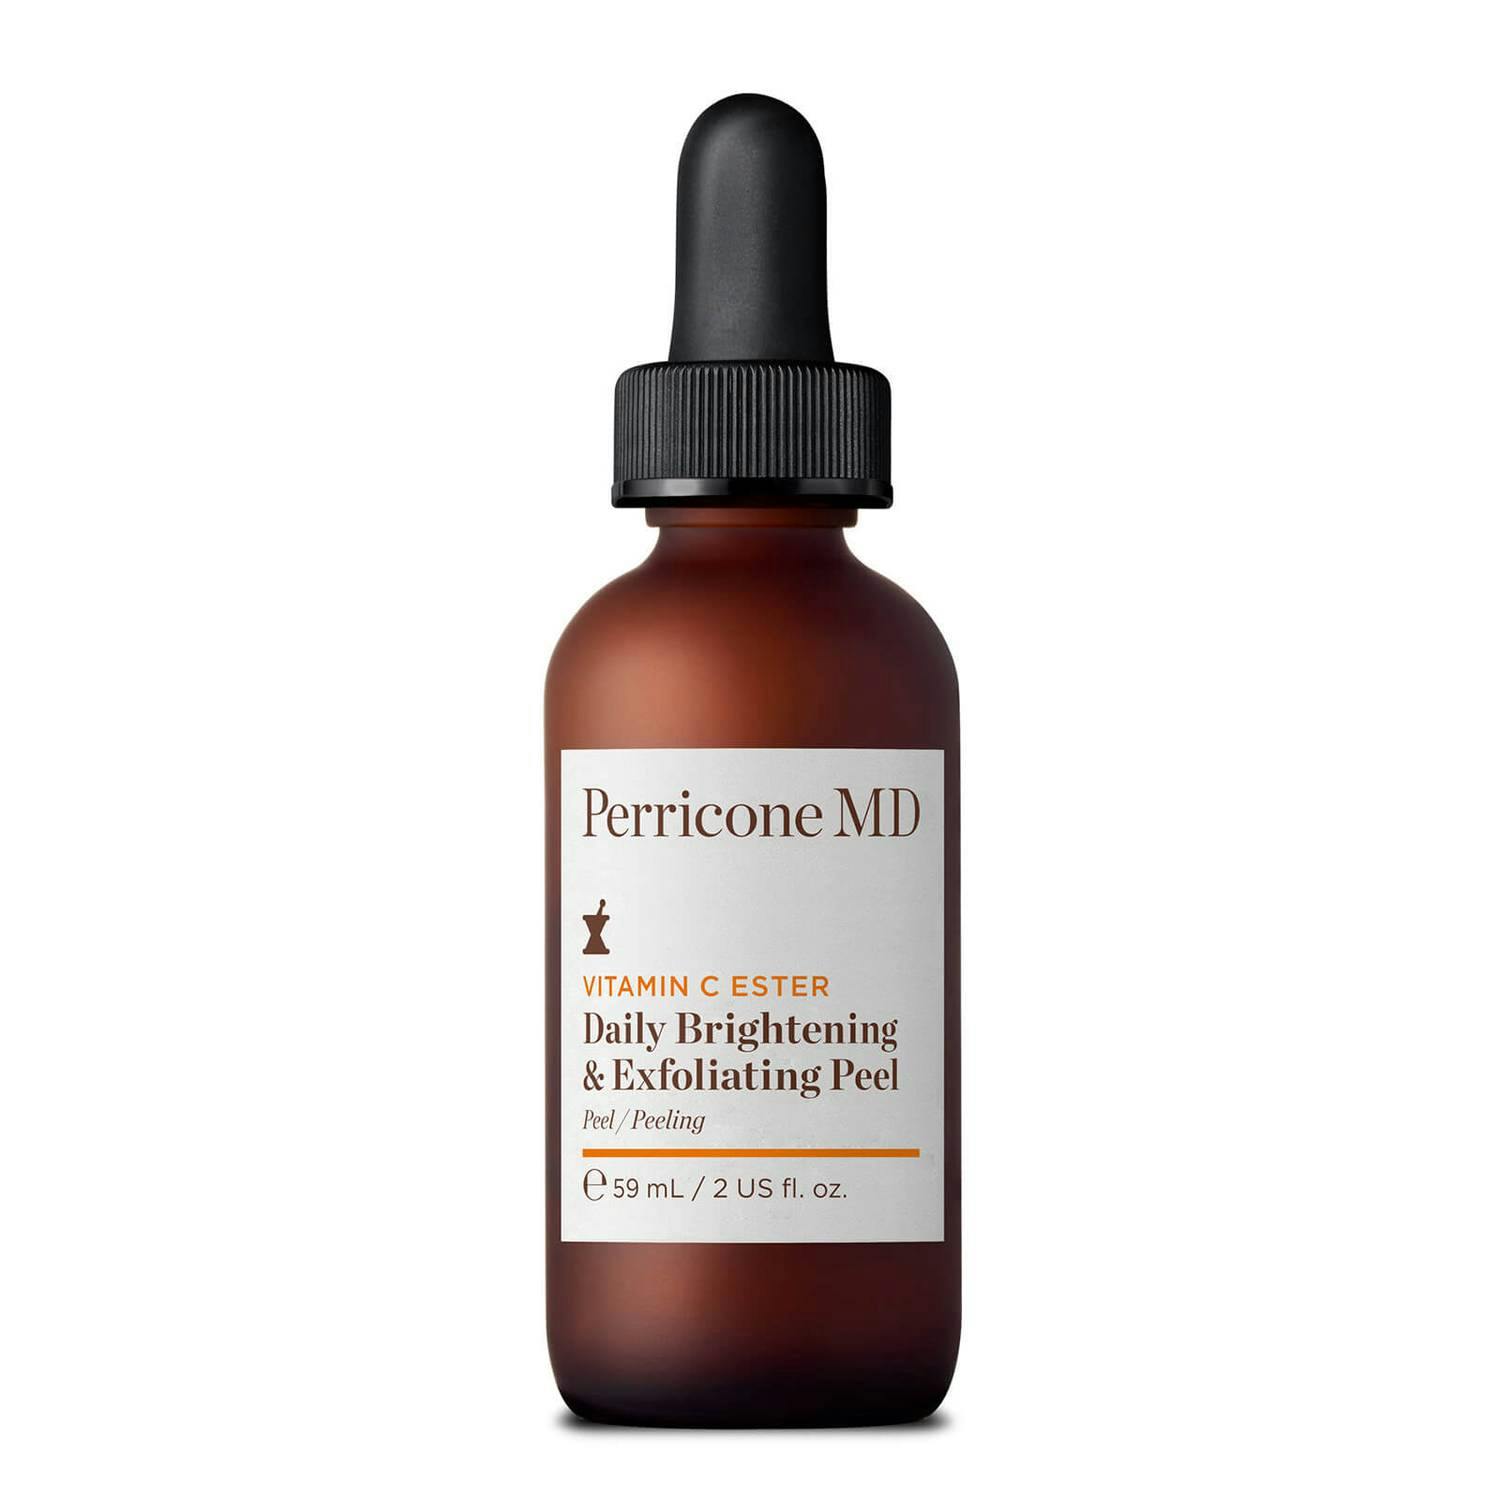 Perricone MD Vitamin C Ester Daily Brightening & Exfoliating Peel Освітлювальний і відлущувальний пілінг для обличчя